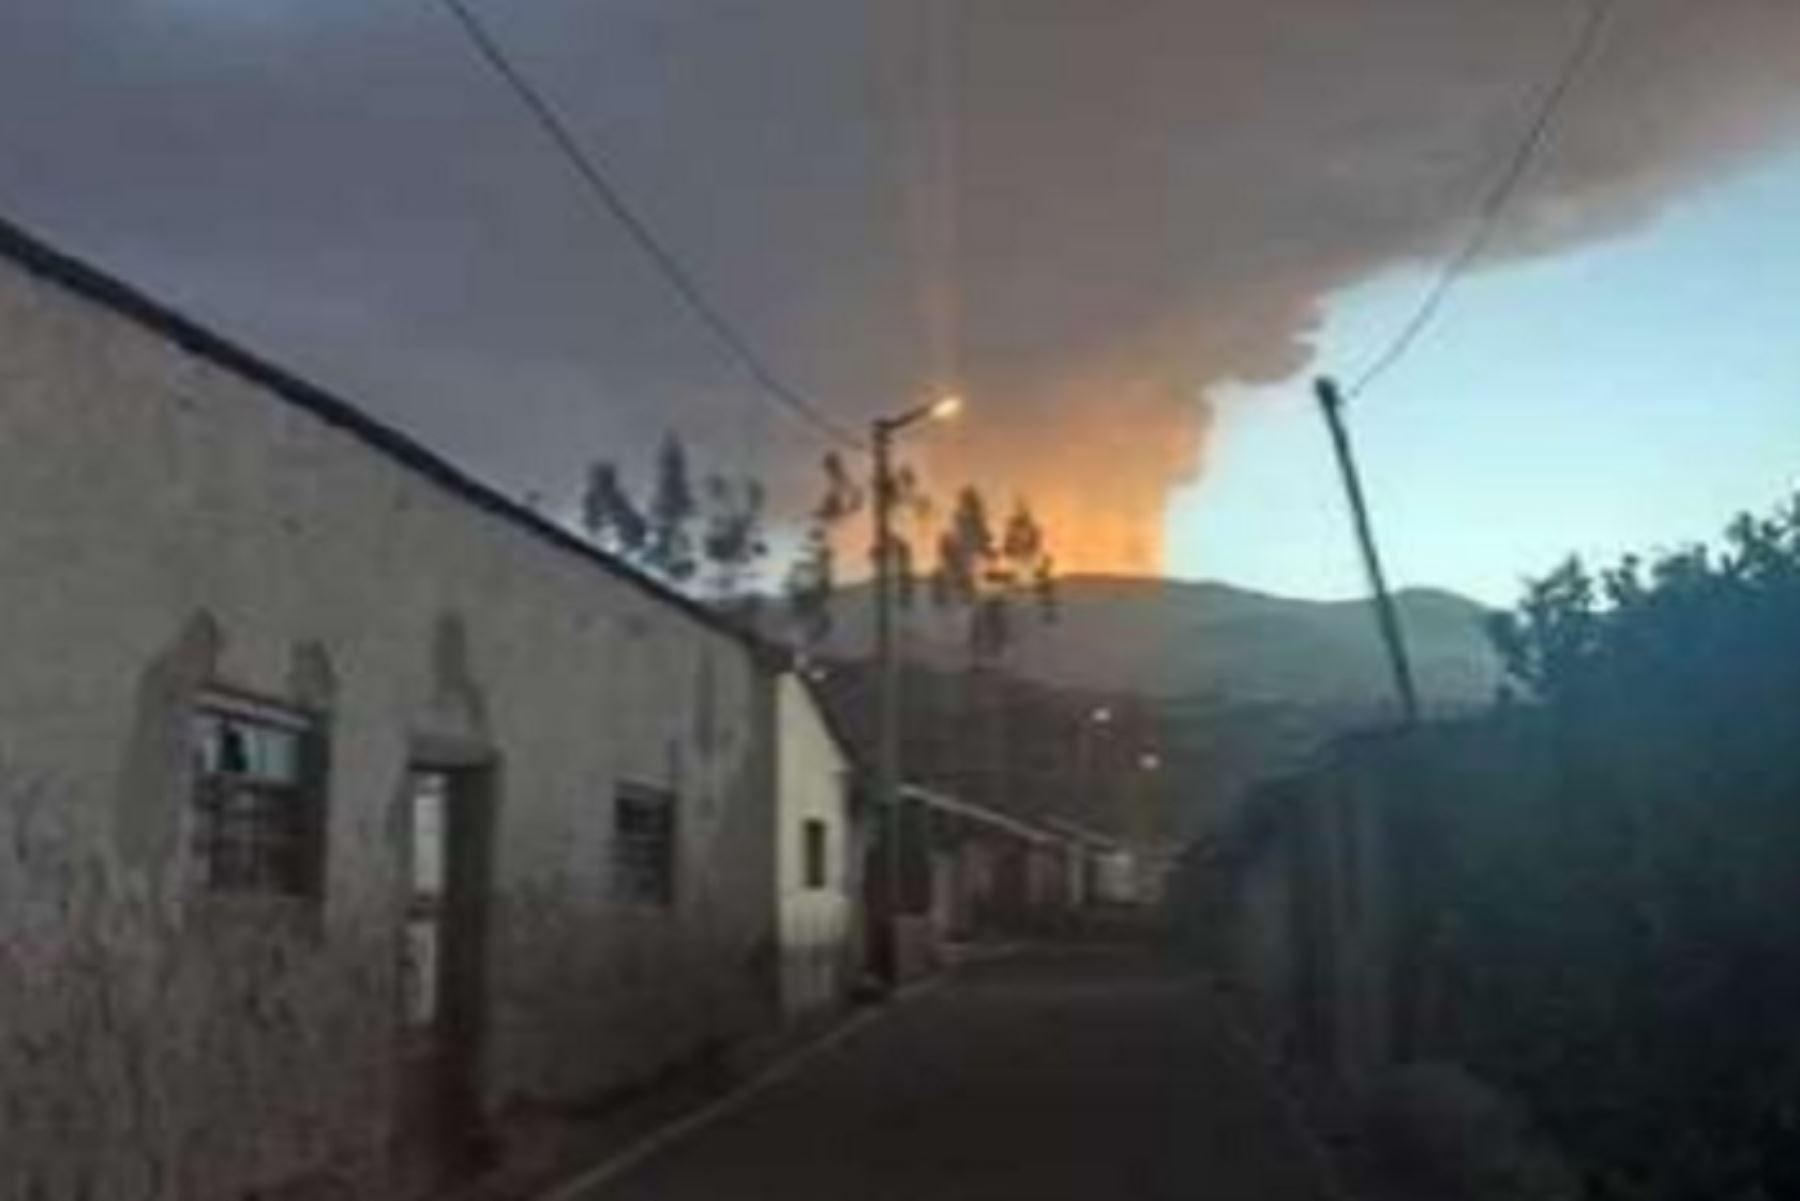 La intensa actividad explosiva del volcán Ubinas, registrada desde esta medianoche, dejó hasta el momento 1,345 personas afectadas en Moquegua, donde se sitúa dicho macizo, Arequipa y Tacna, por la dispersión de ceniza, informó el Instituto Nacional de Defensa Civil (Indeci).